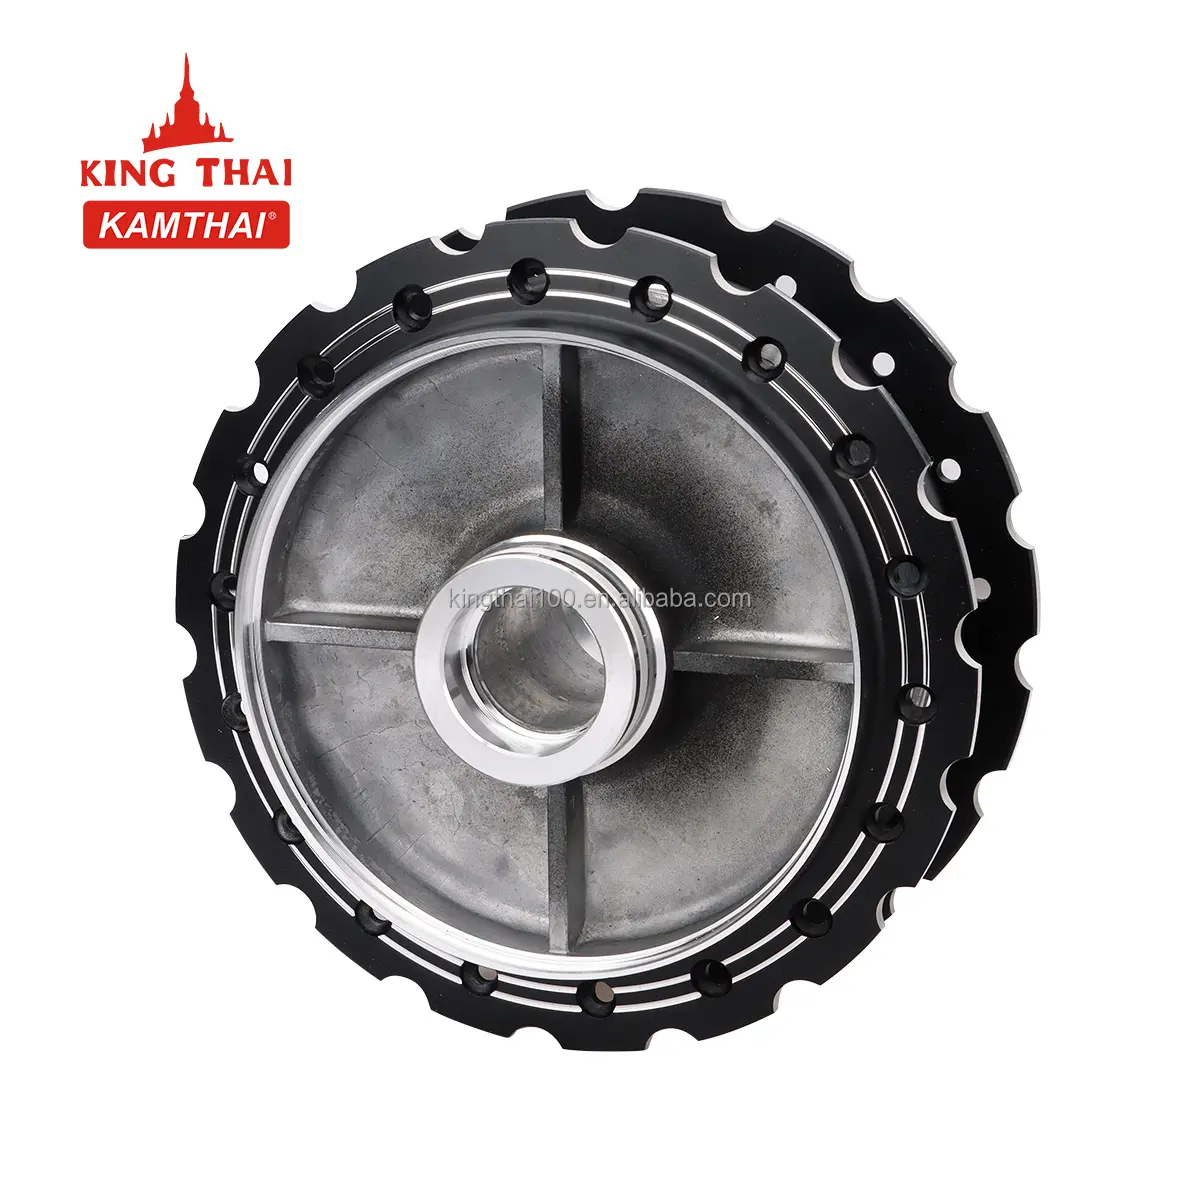 موجة دراجة نارية من كامتاي قطع غيار محاور العجلات الخلفية محور عجلة Ktm